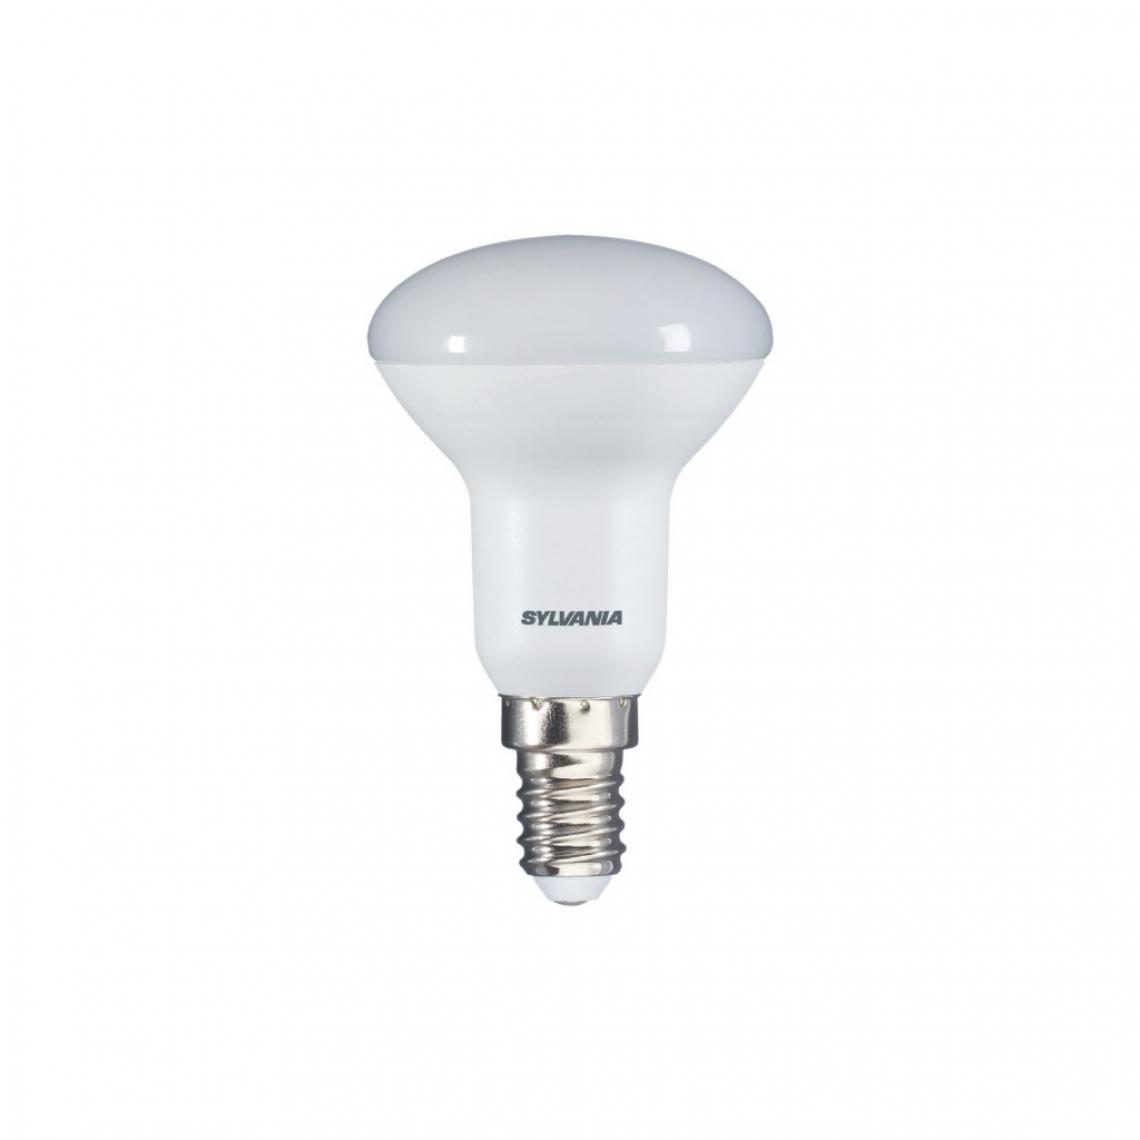 Alpexe - Ampoule LED E14 R50 5 W 470 lm 3000 K - Ampoules LED